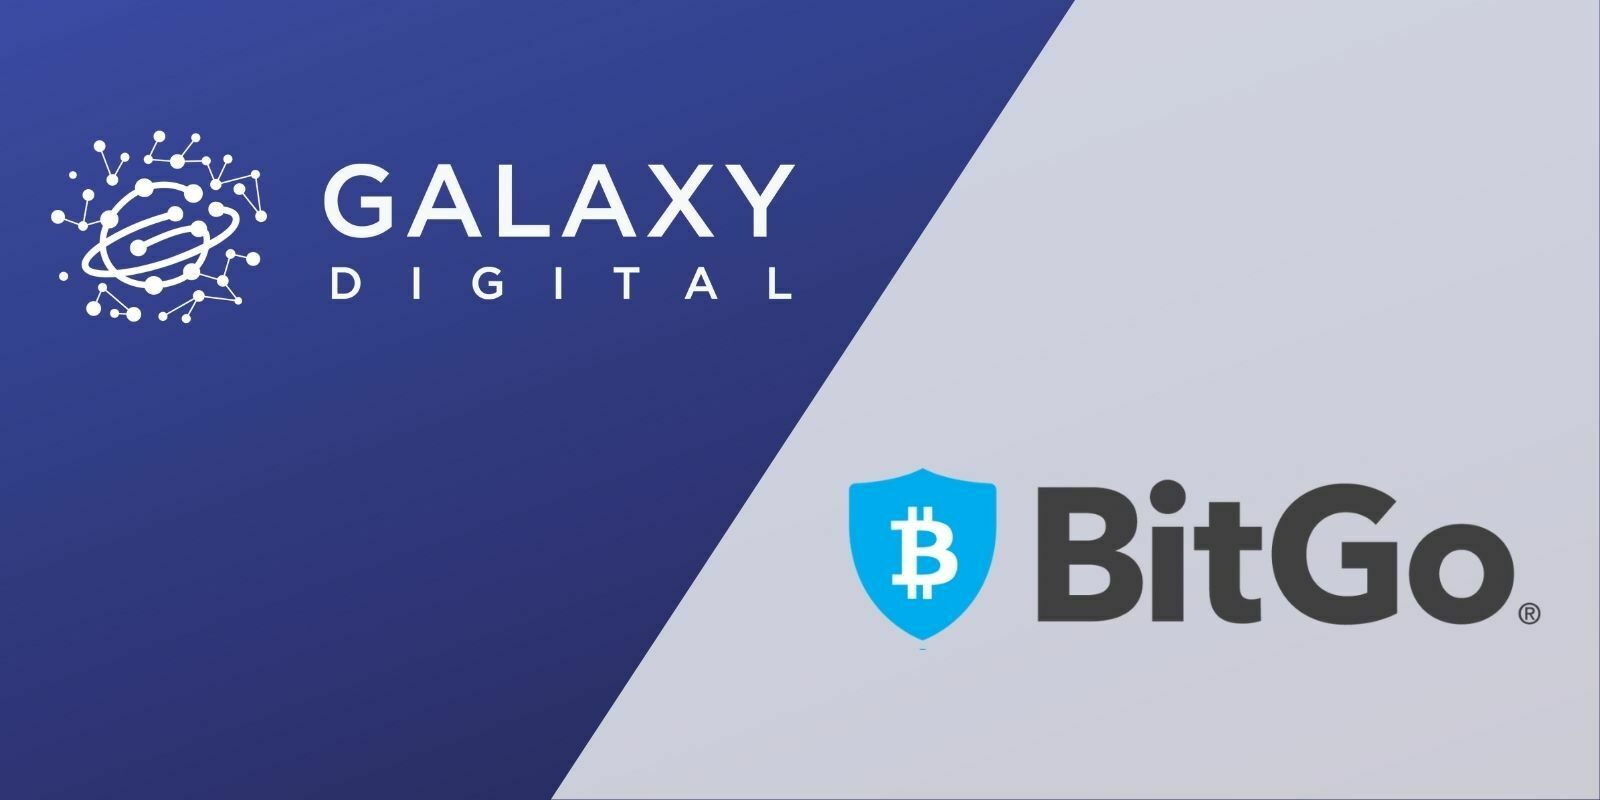 Galaxy Digital rachète le service de garde BitGo pour 1,2 milliard de dollars